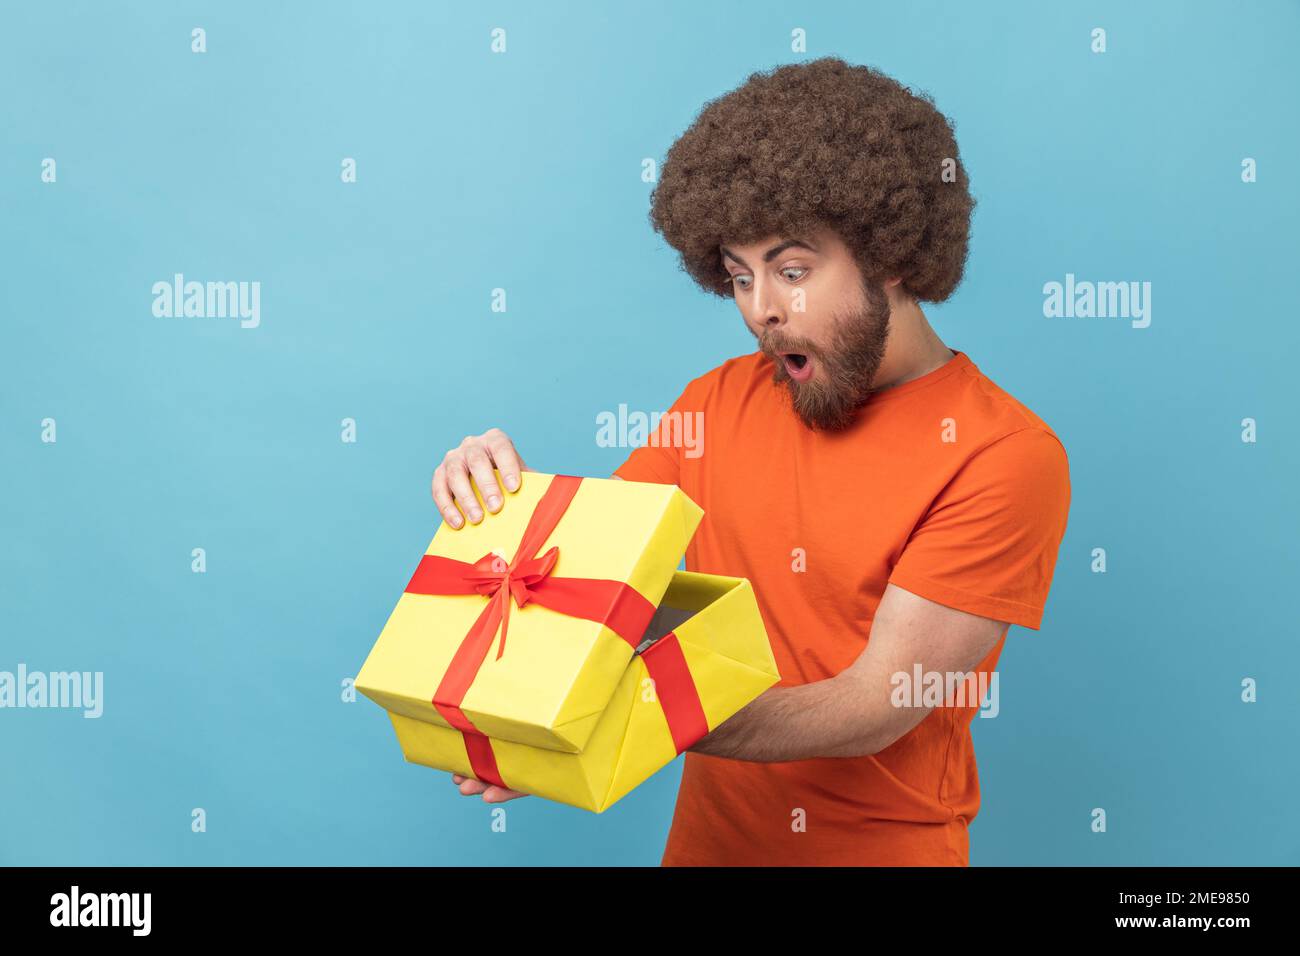 Porträt eines Mannes mit Afro-Haarschnitt, der ein orangefarbenes T-Shirt trägt, das Geschenk auspackt, in eine Schachtel mit schockiertem und verängstigtem Gesichtsausdruck schaut, Geburtstagsgeschenk. Innenstudio, isoliert auf blauem Hintergrund. Stockfoto